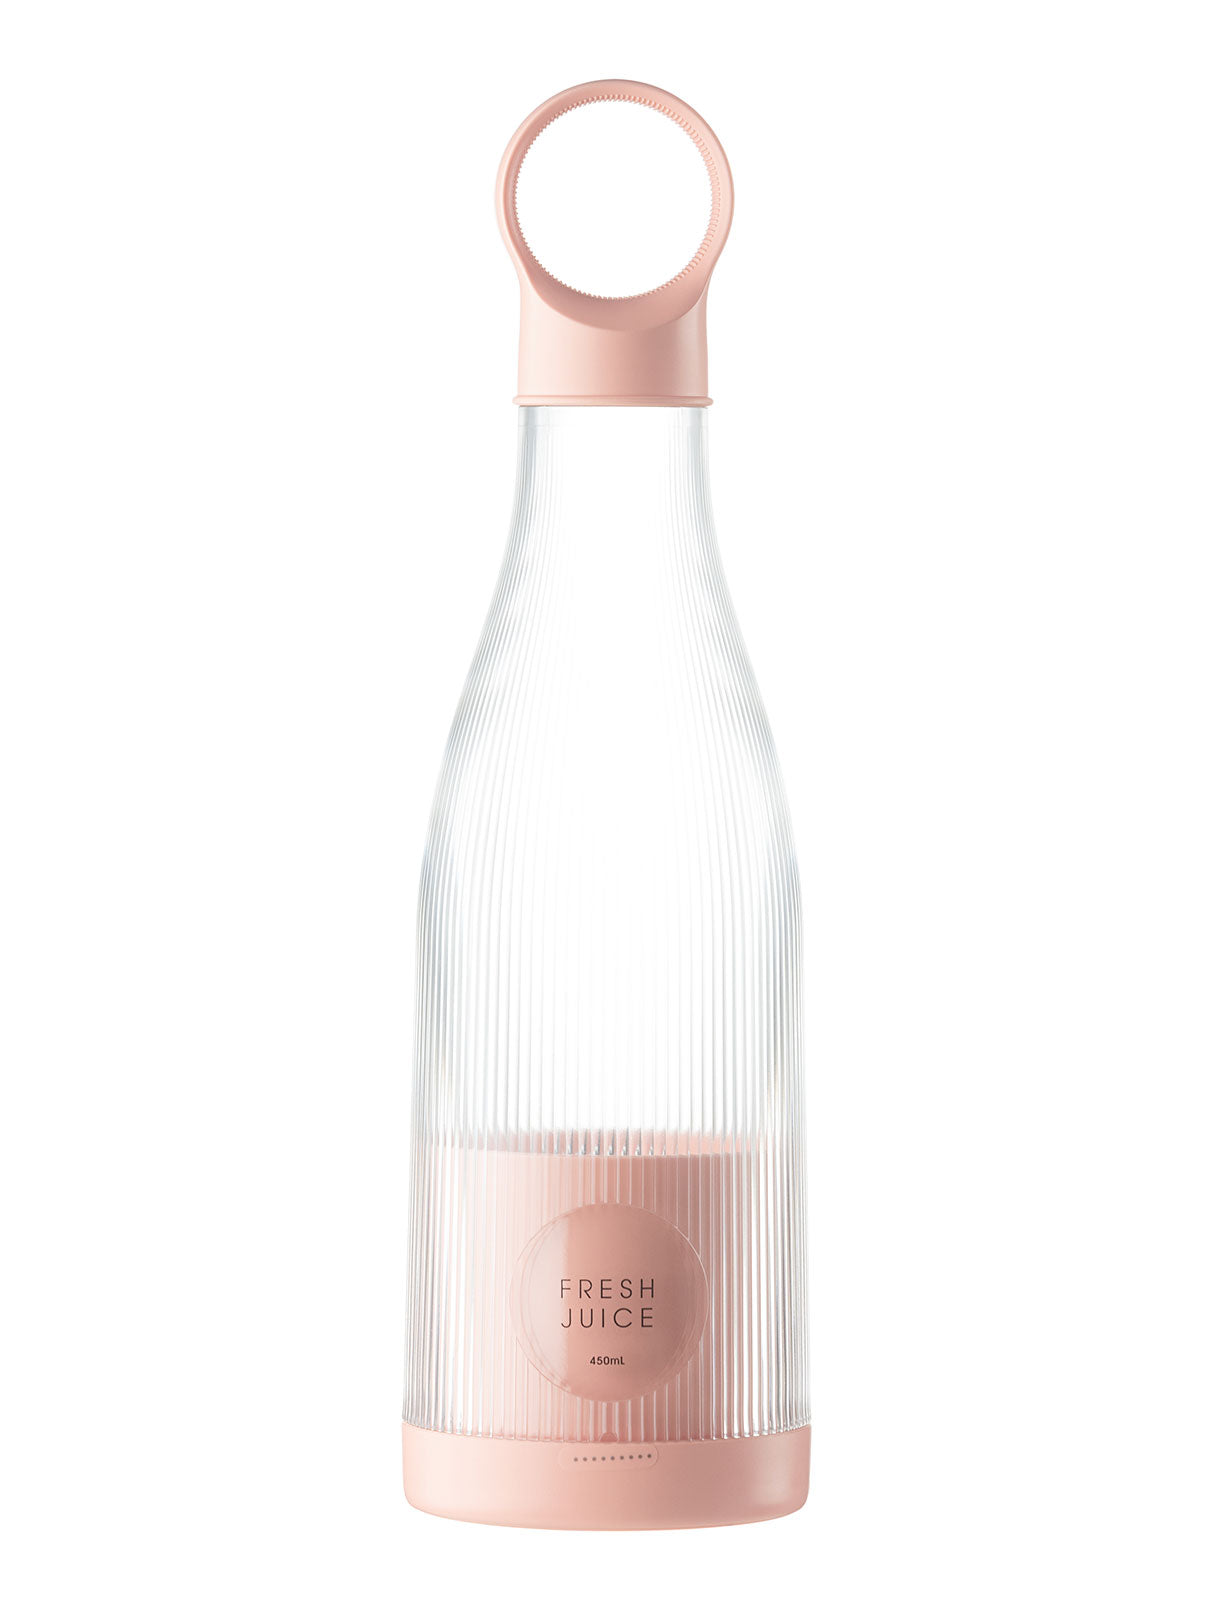 450 Ml Juice Glass Bottle